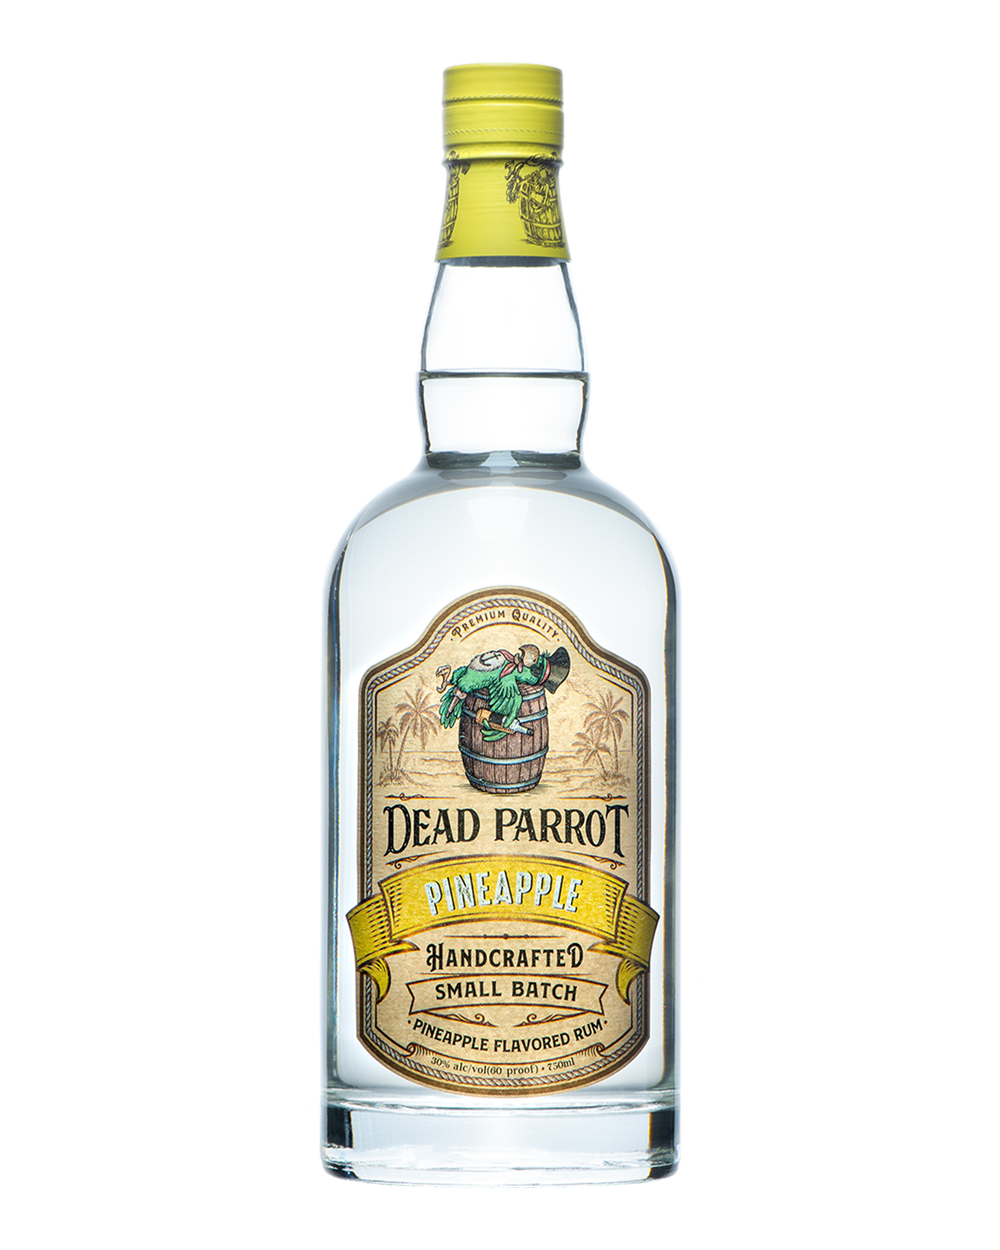 Dead Parrot Pineapple Rum bottle